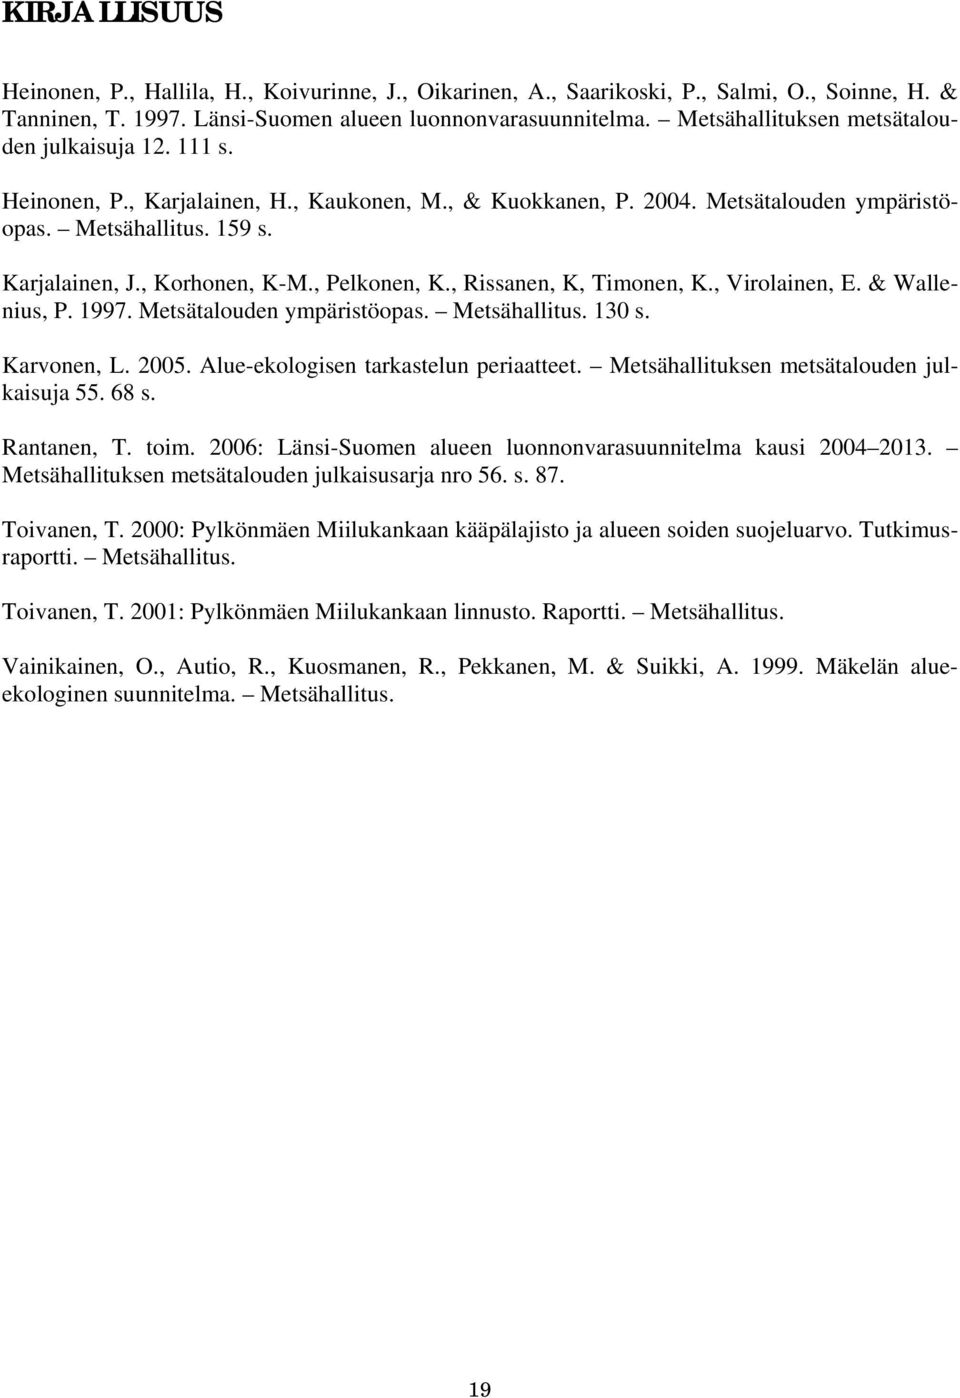 , Korhonen, K-M., Pelkonen, K., Rissanen, K, Timonen, K., Virolainen, E. & Wallenius, P. 1997. Metsätalouden ympäristöopas. Metsähallitus. 130 s. Karvonen, L. 2005.